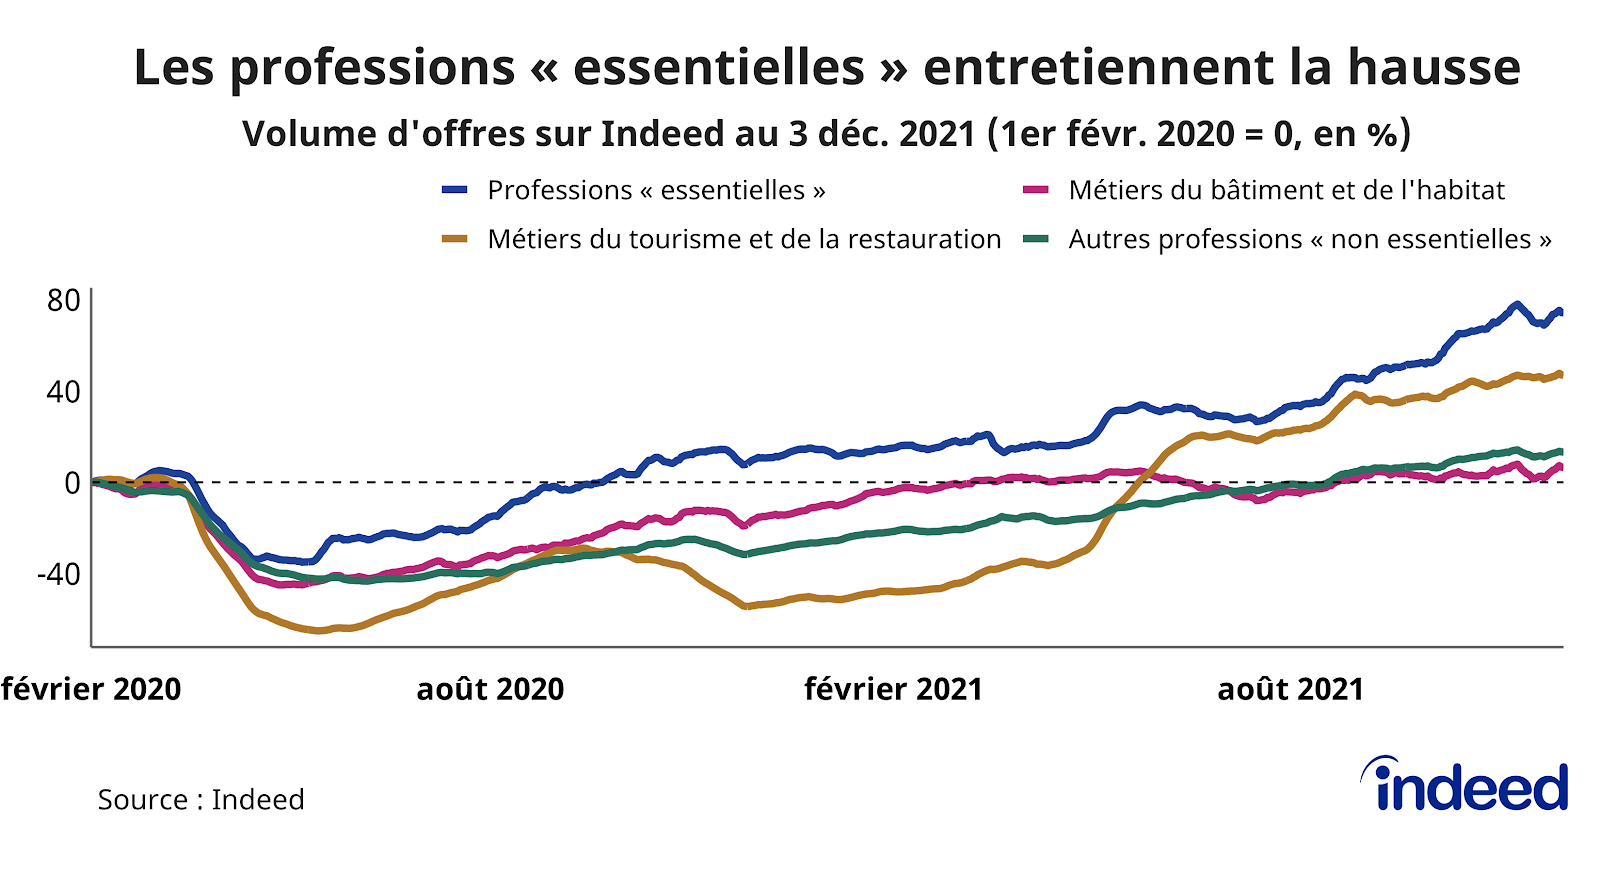 Le graphique en courbes illustre l’évolution, par rapport à la référence du 1er février 2020, du volume d’offres d’emploi (en abscisses) en fonction du temps (en ordonnées), jusqu’au 3 décembre 2021.